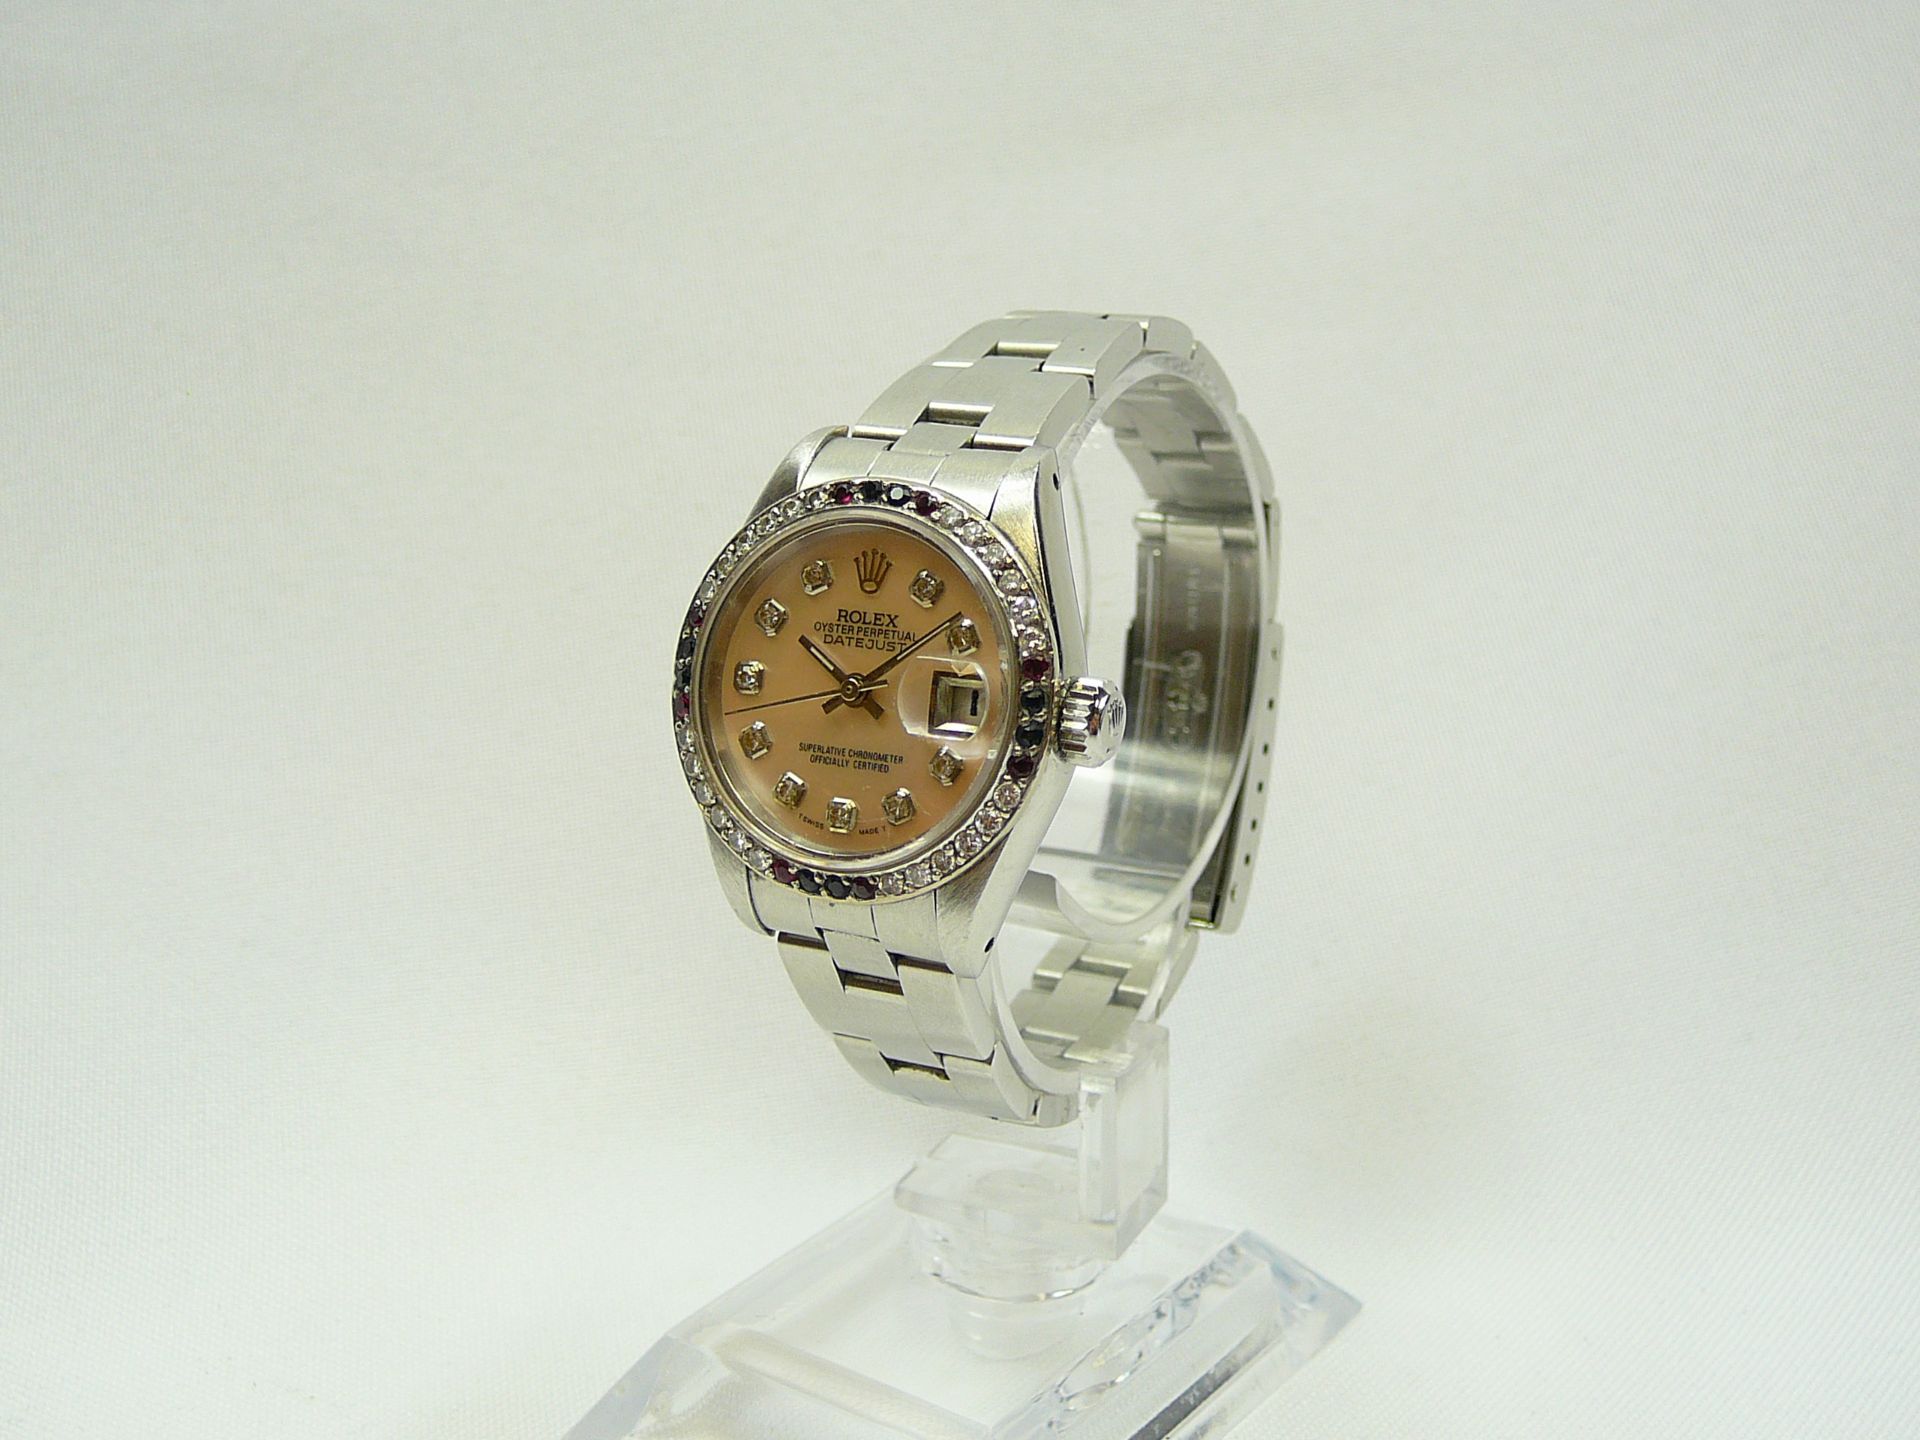 Ladies Rolex Wrist Watch